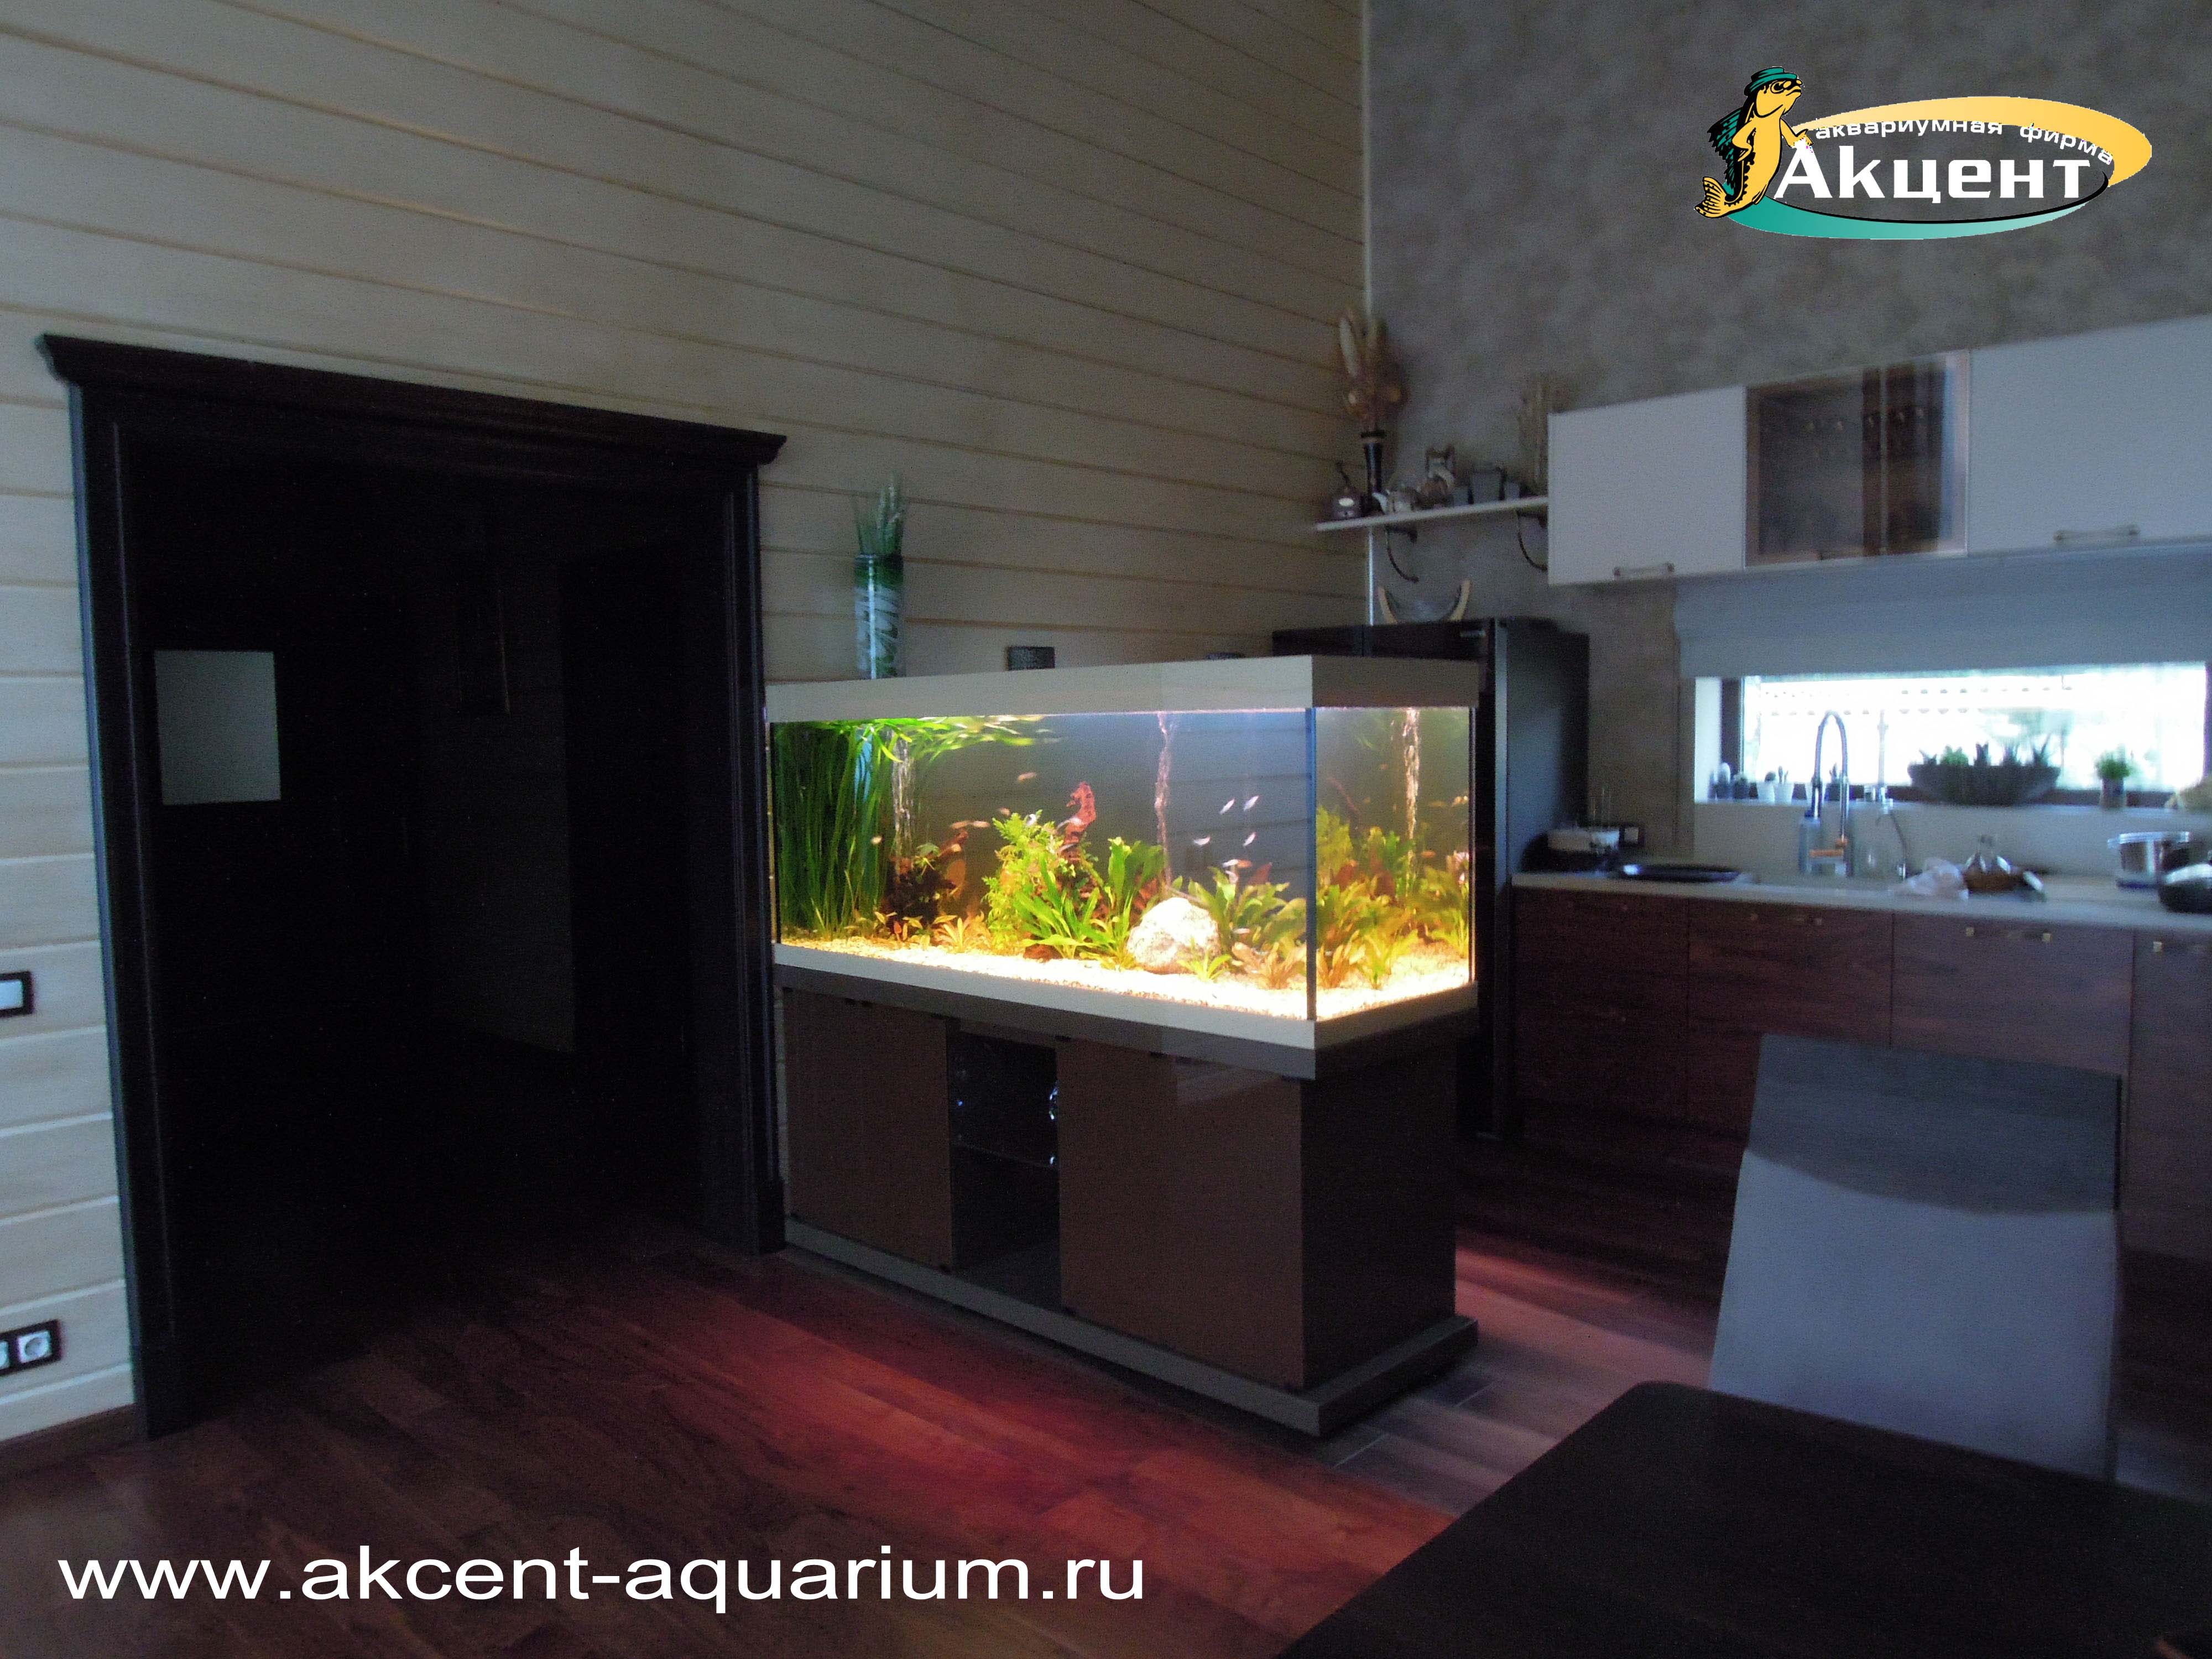 Акцент-аквариум, аквариум просмотровый 600 литров, с живыми растениями